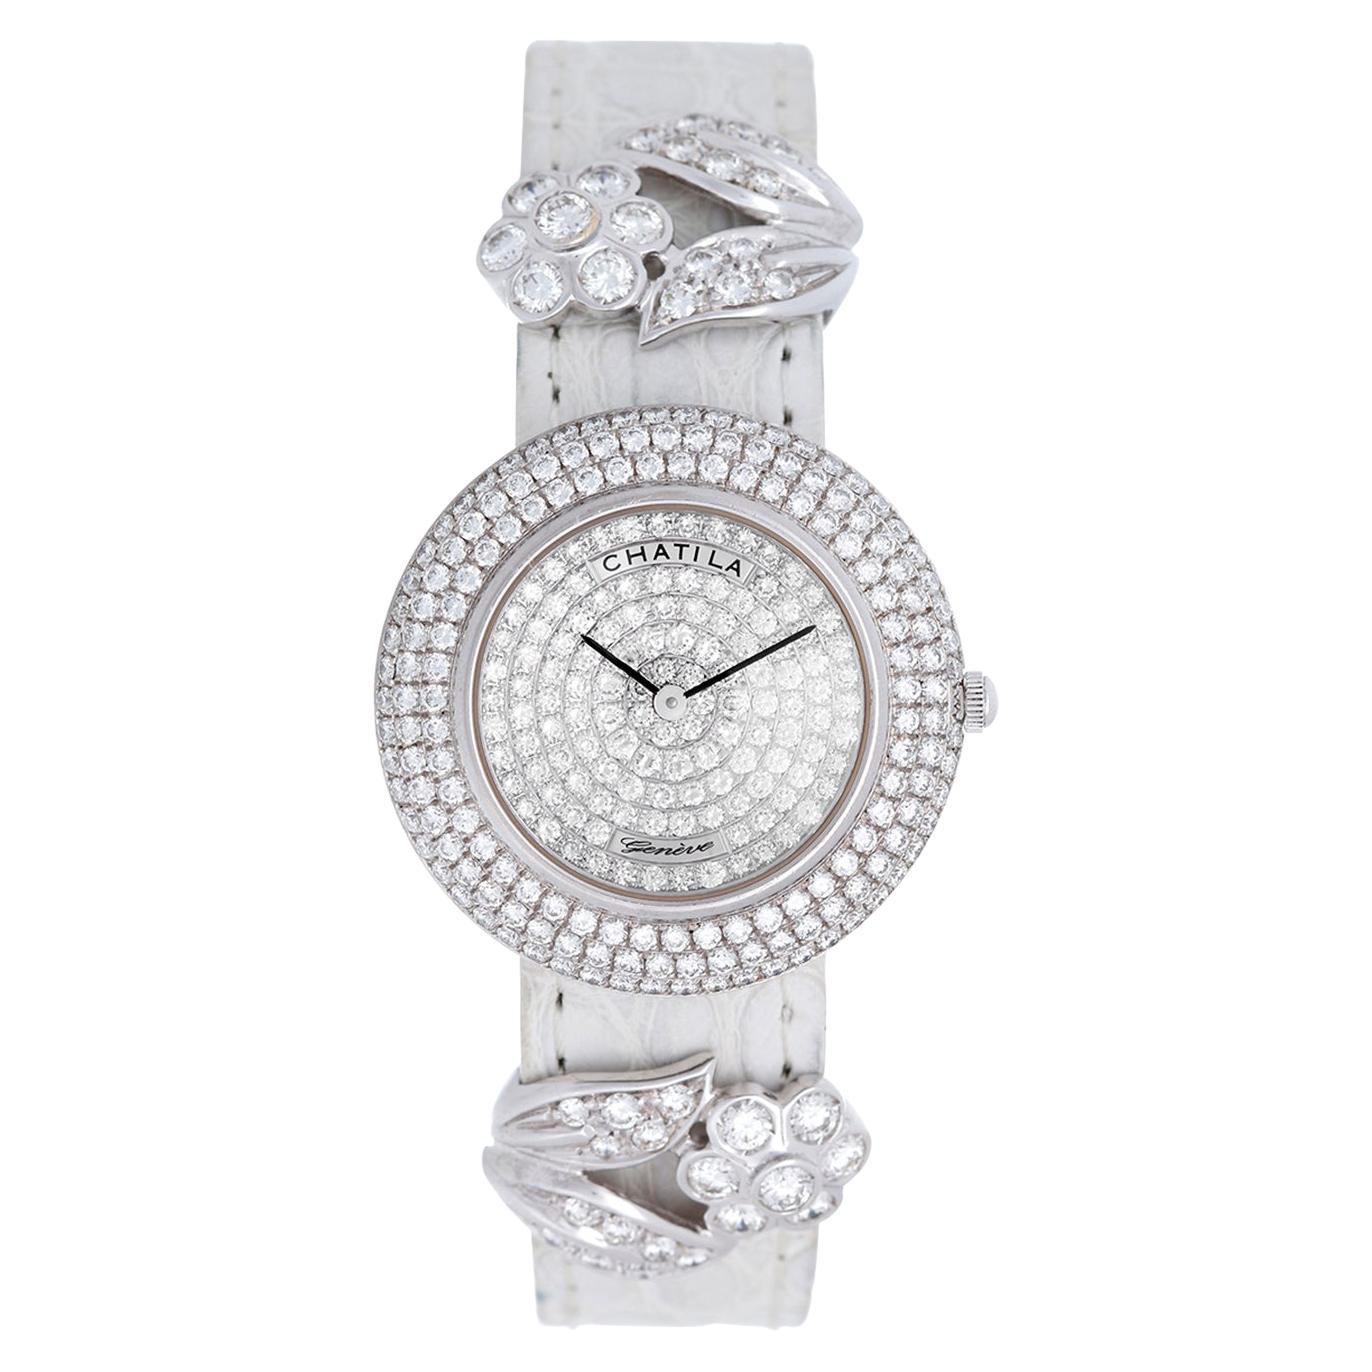 Chatila Ladies White Gold Diamond Pave Arc-en-Ciel Wristwatch